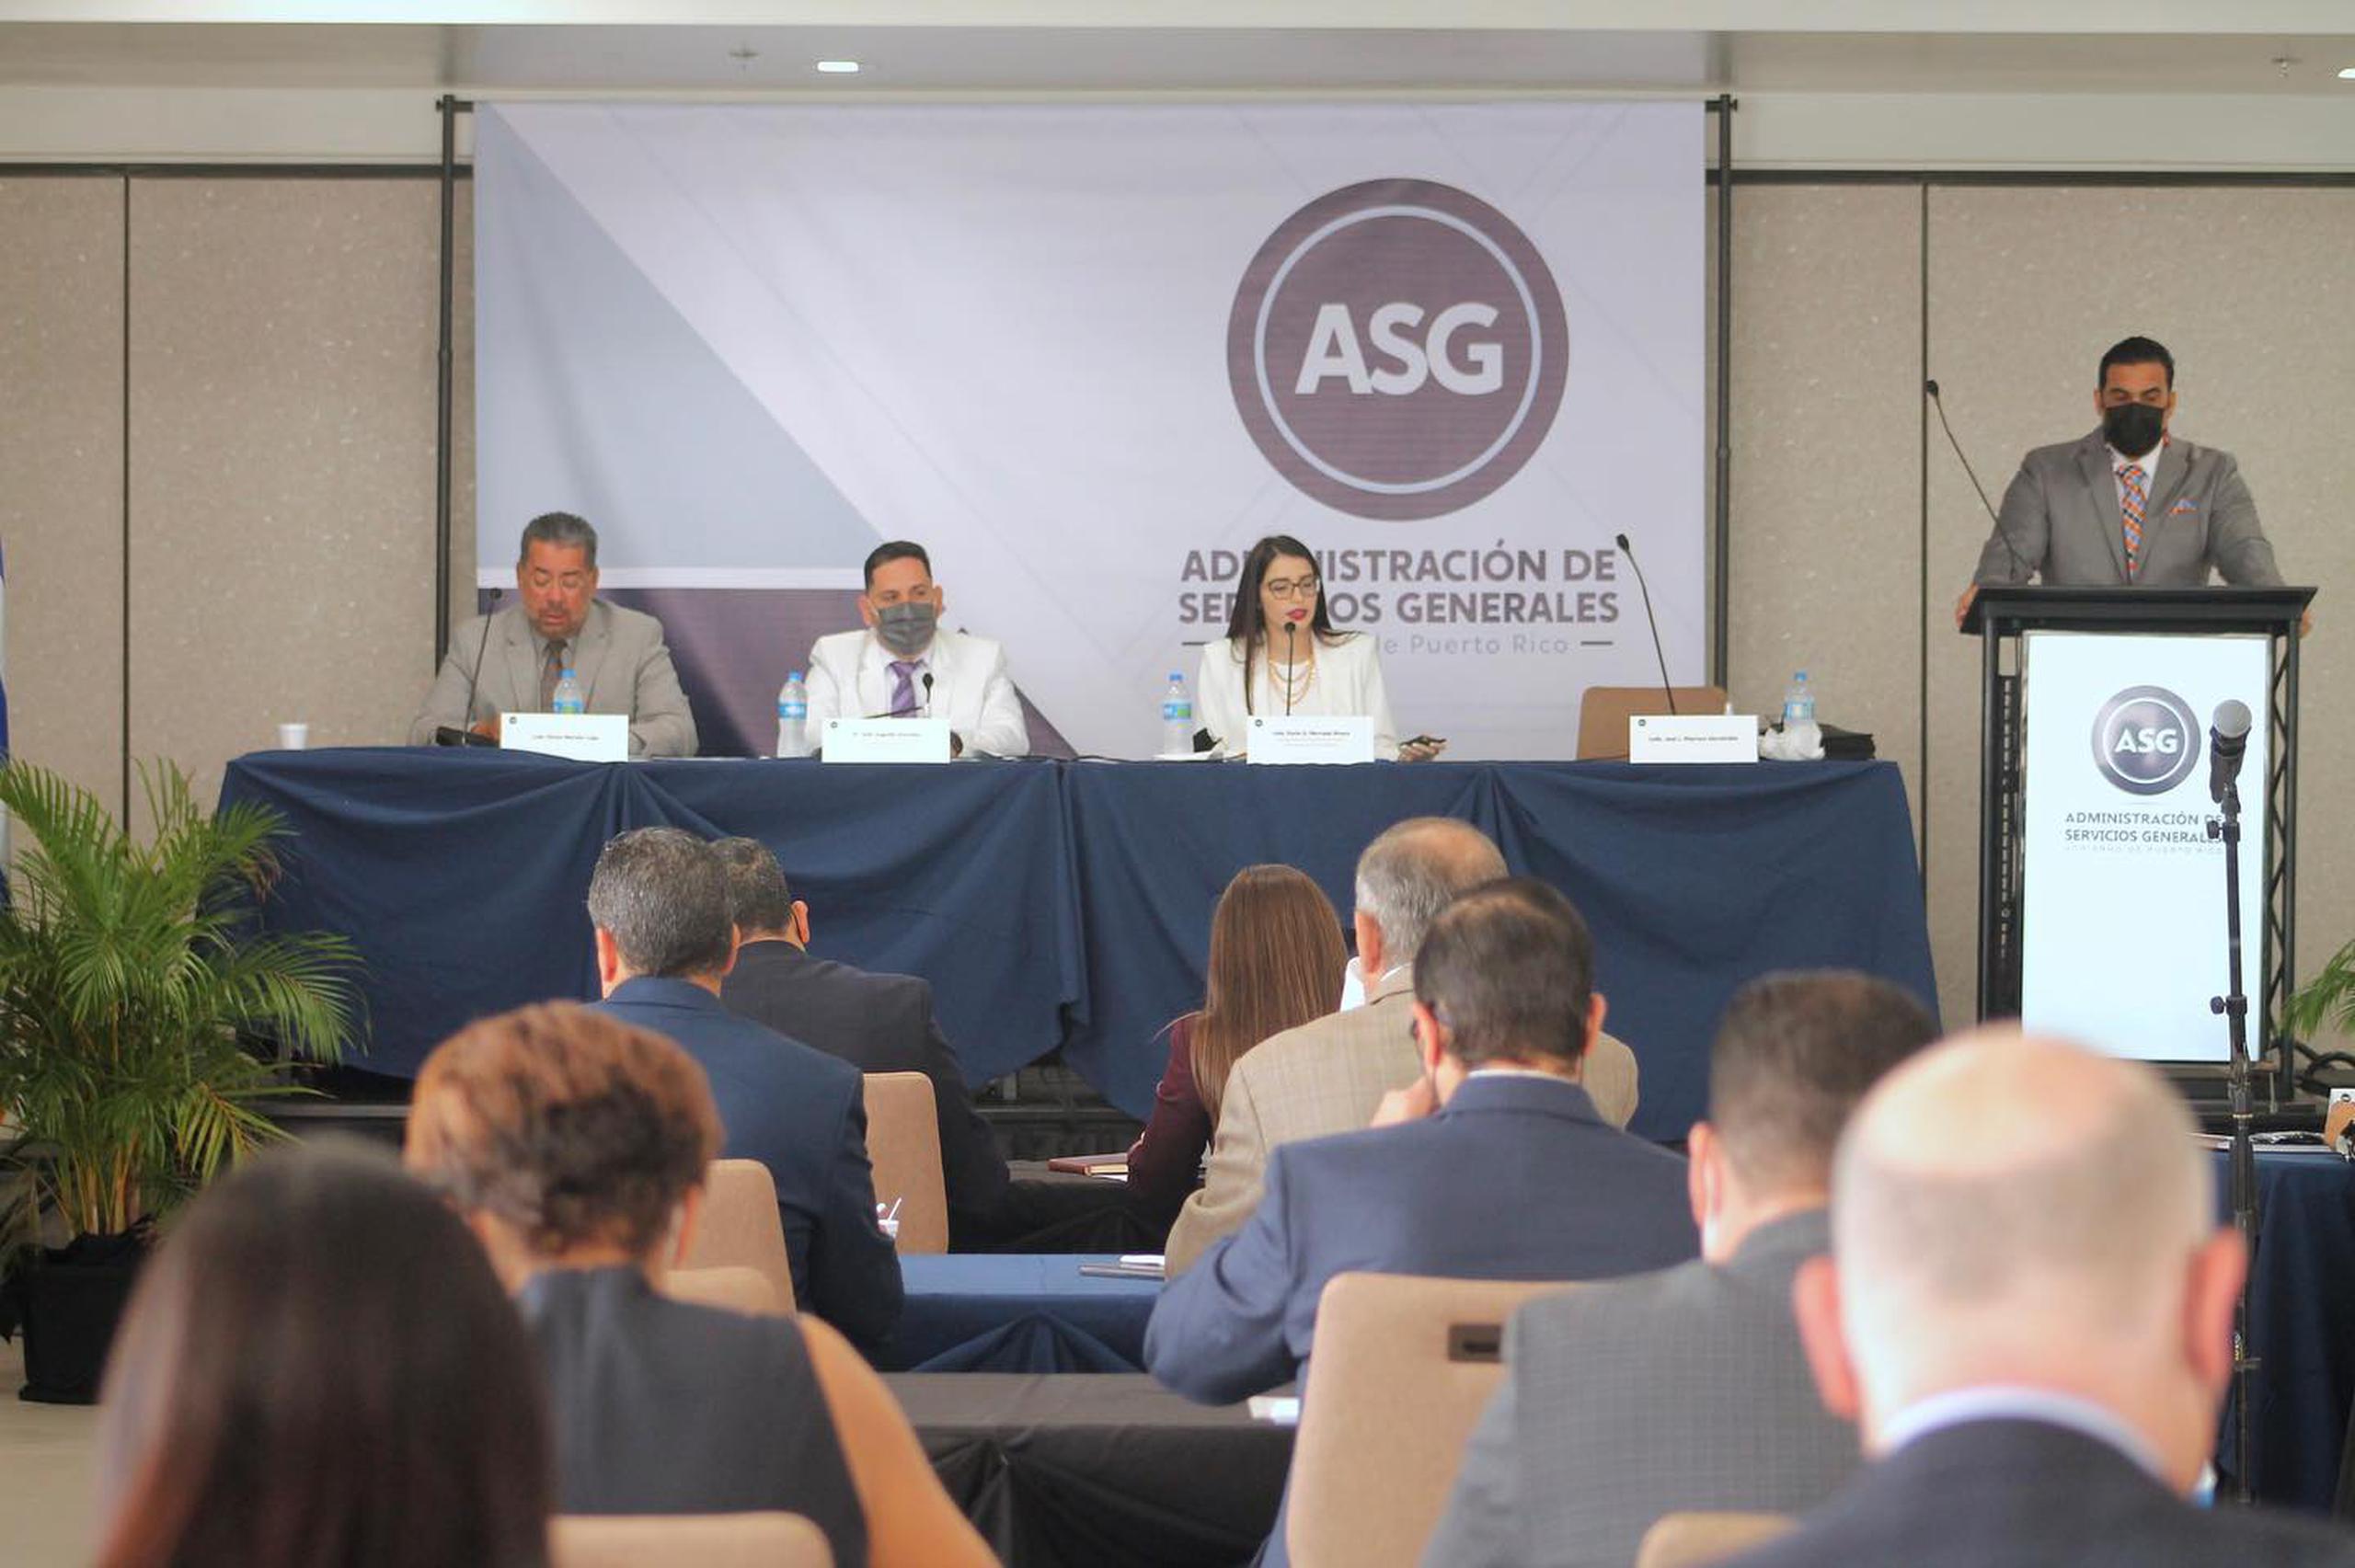 Karla Mercado, principal oficial de compras del gobierno y administradora de ASG, culminó hoy una serie de adiestramientos para los jefes de agencias sobre el nuevo sistema de compras.